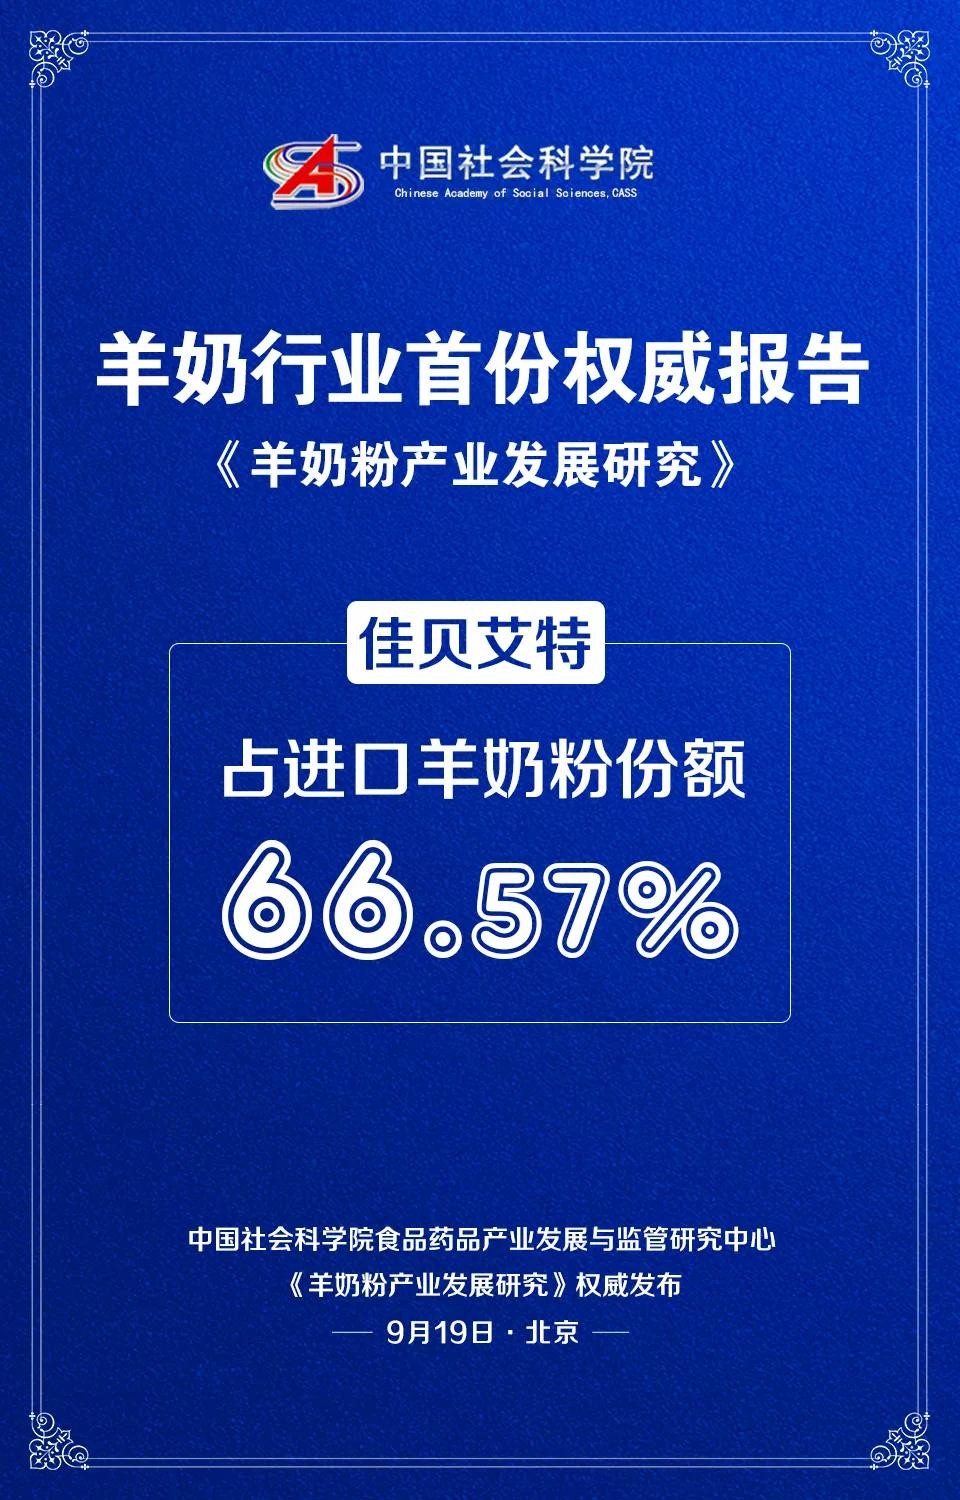 社科院发布《中国羊奶粉产业发展研究》(图2)